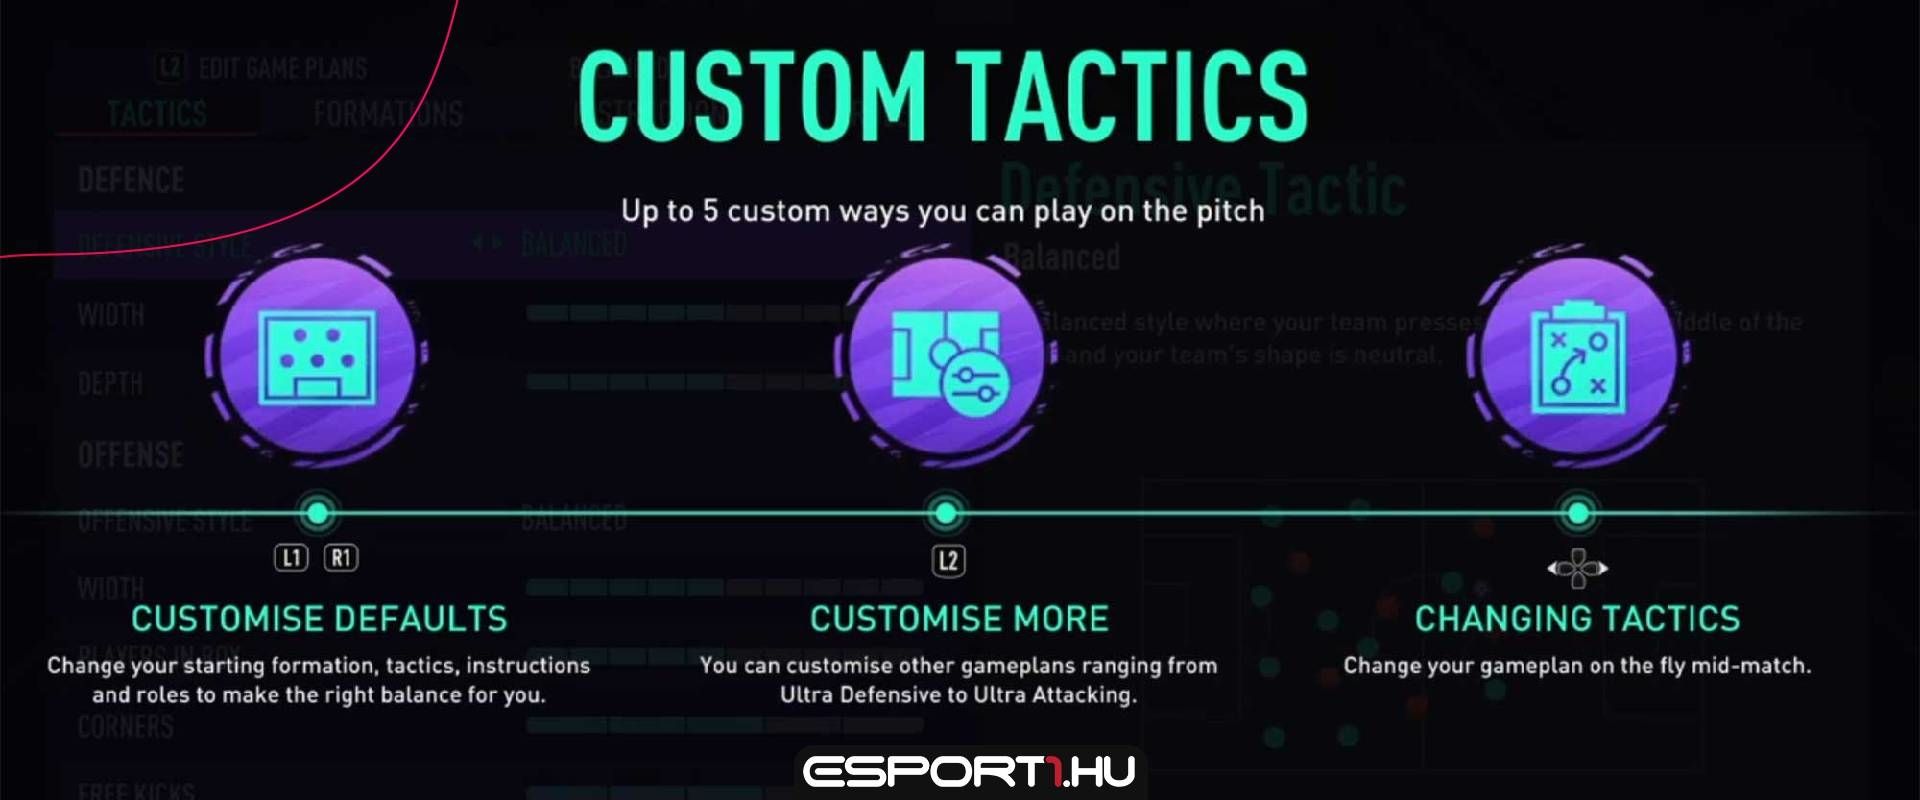 Melyik a legjobb defenzív custom tactics? Az EA segít kideríteni!